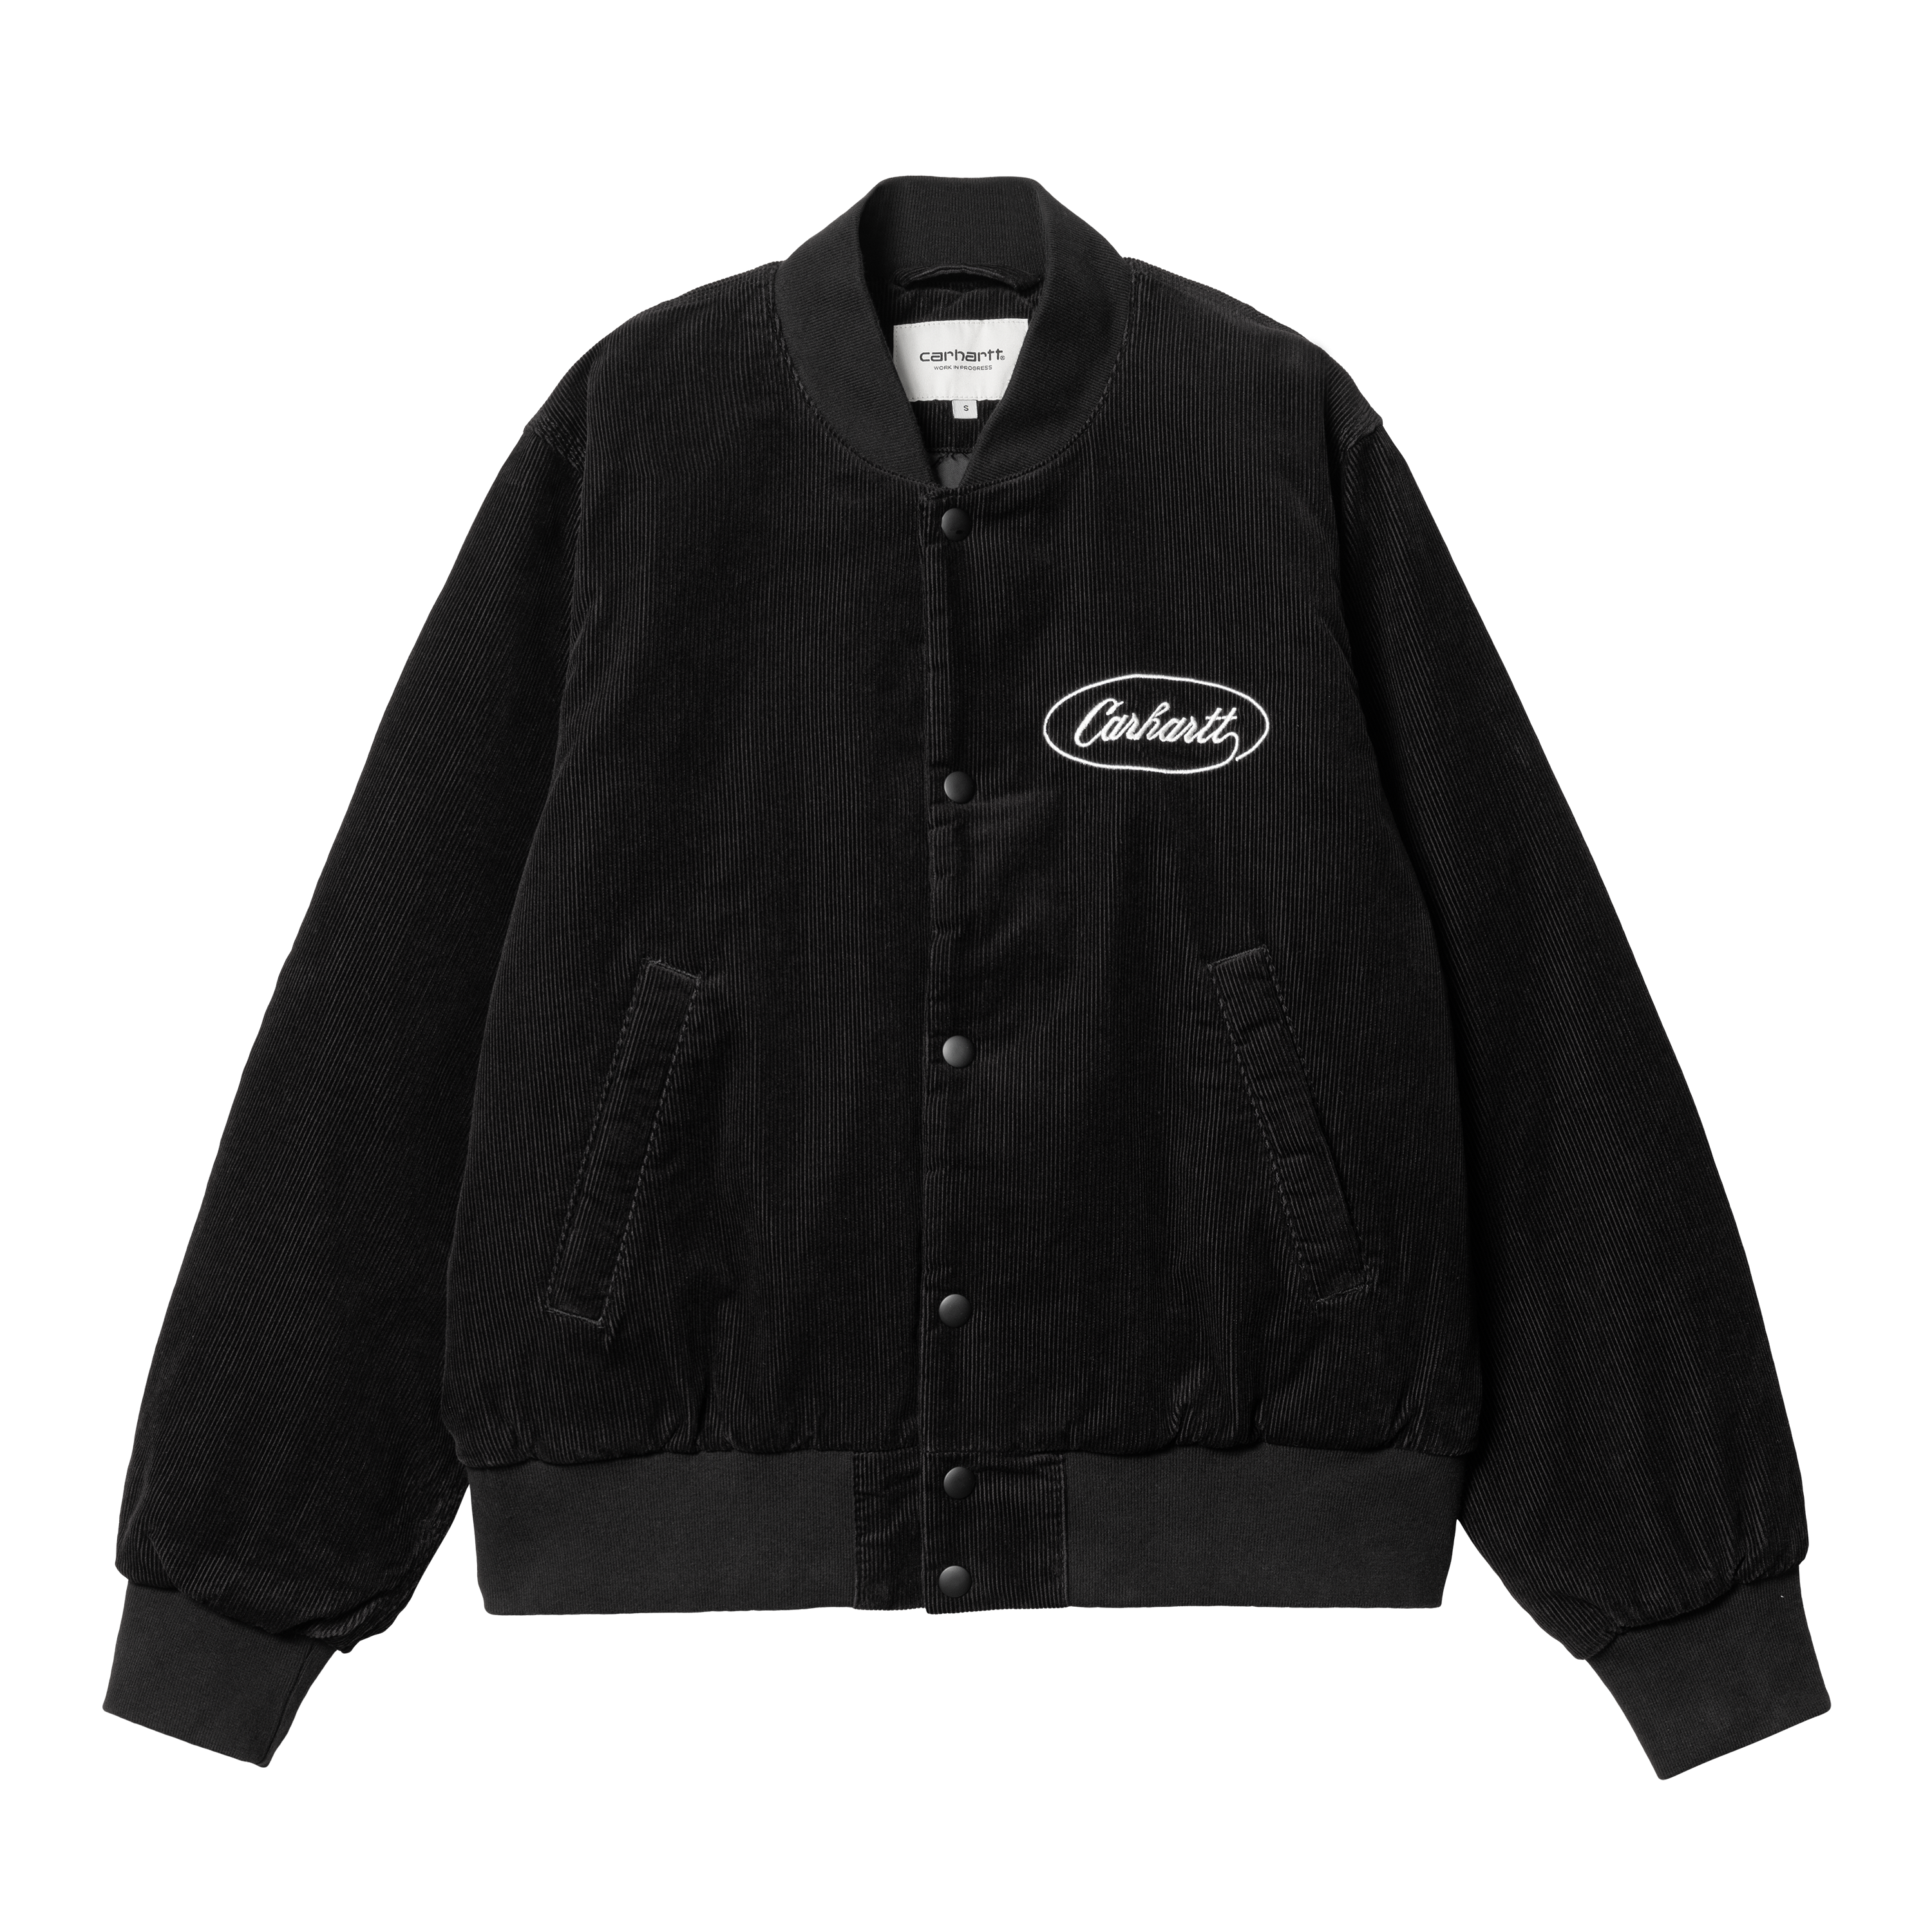 Carhartt WIP Women’s Rugged Letterman Jacket in Black